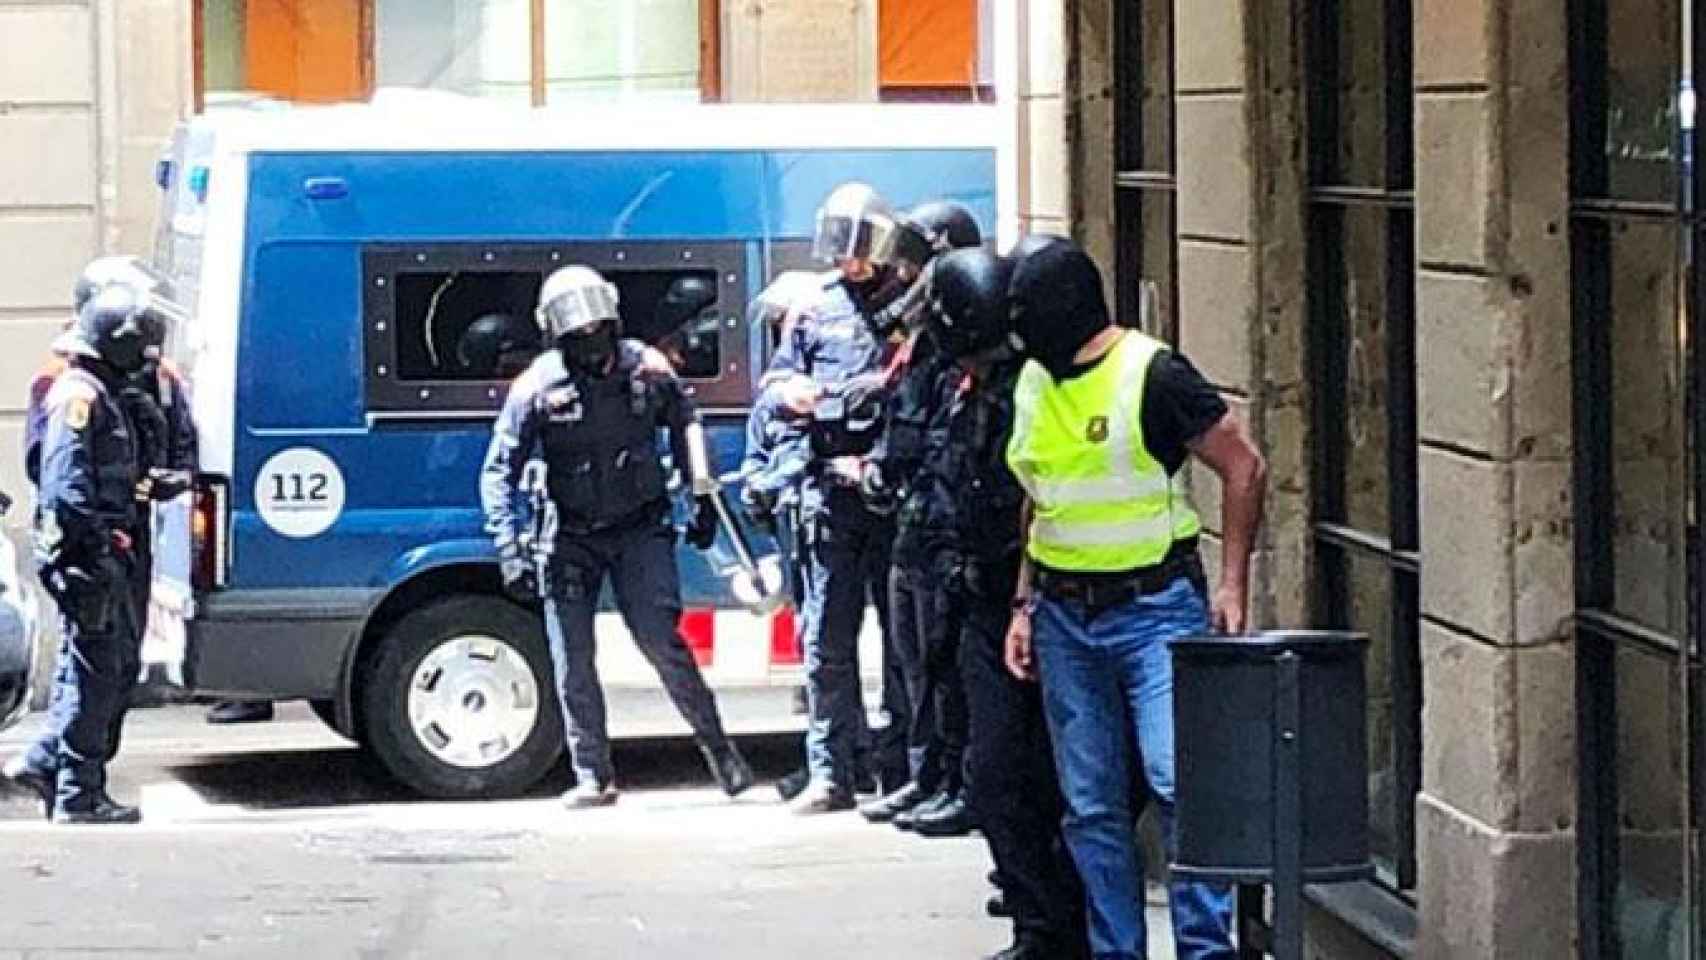 Operación policial de los Mossos d'Esquadra contra los narcopisos en el Gótico ayer viernes, 25 de mayo / CG